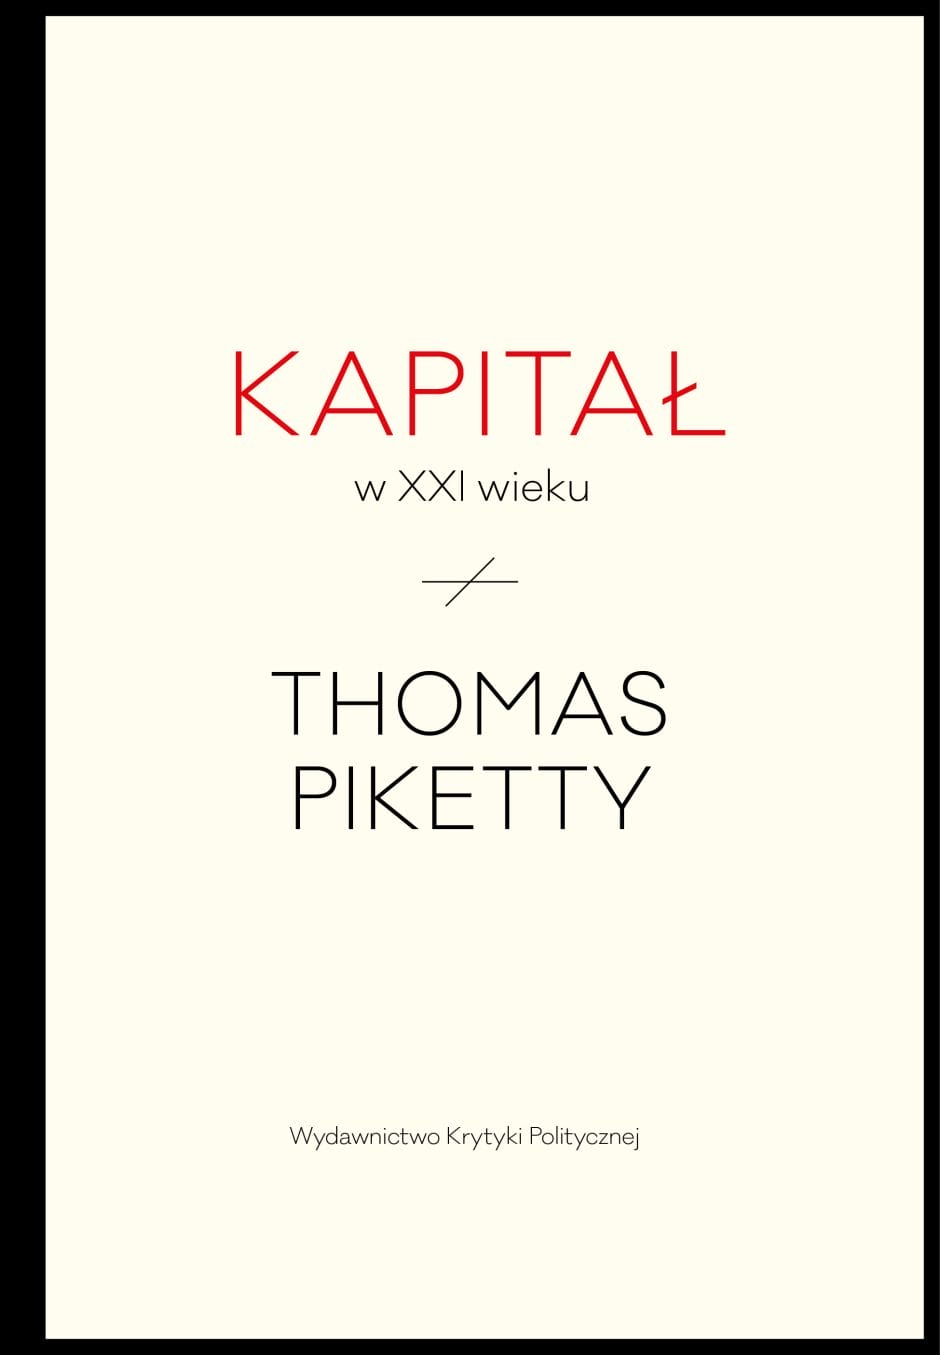 Thomas Piketty: Kapitał w XXI wieku